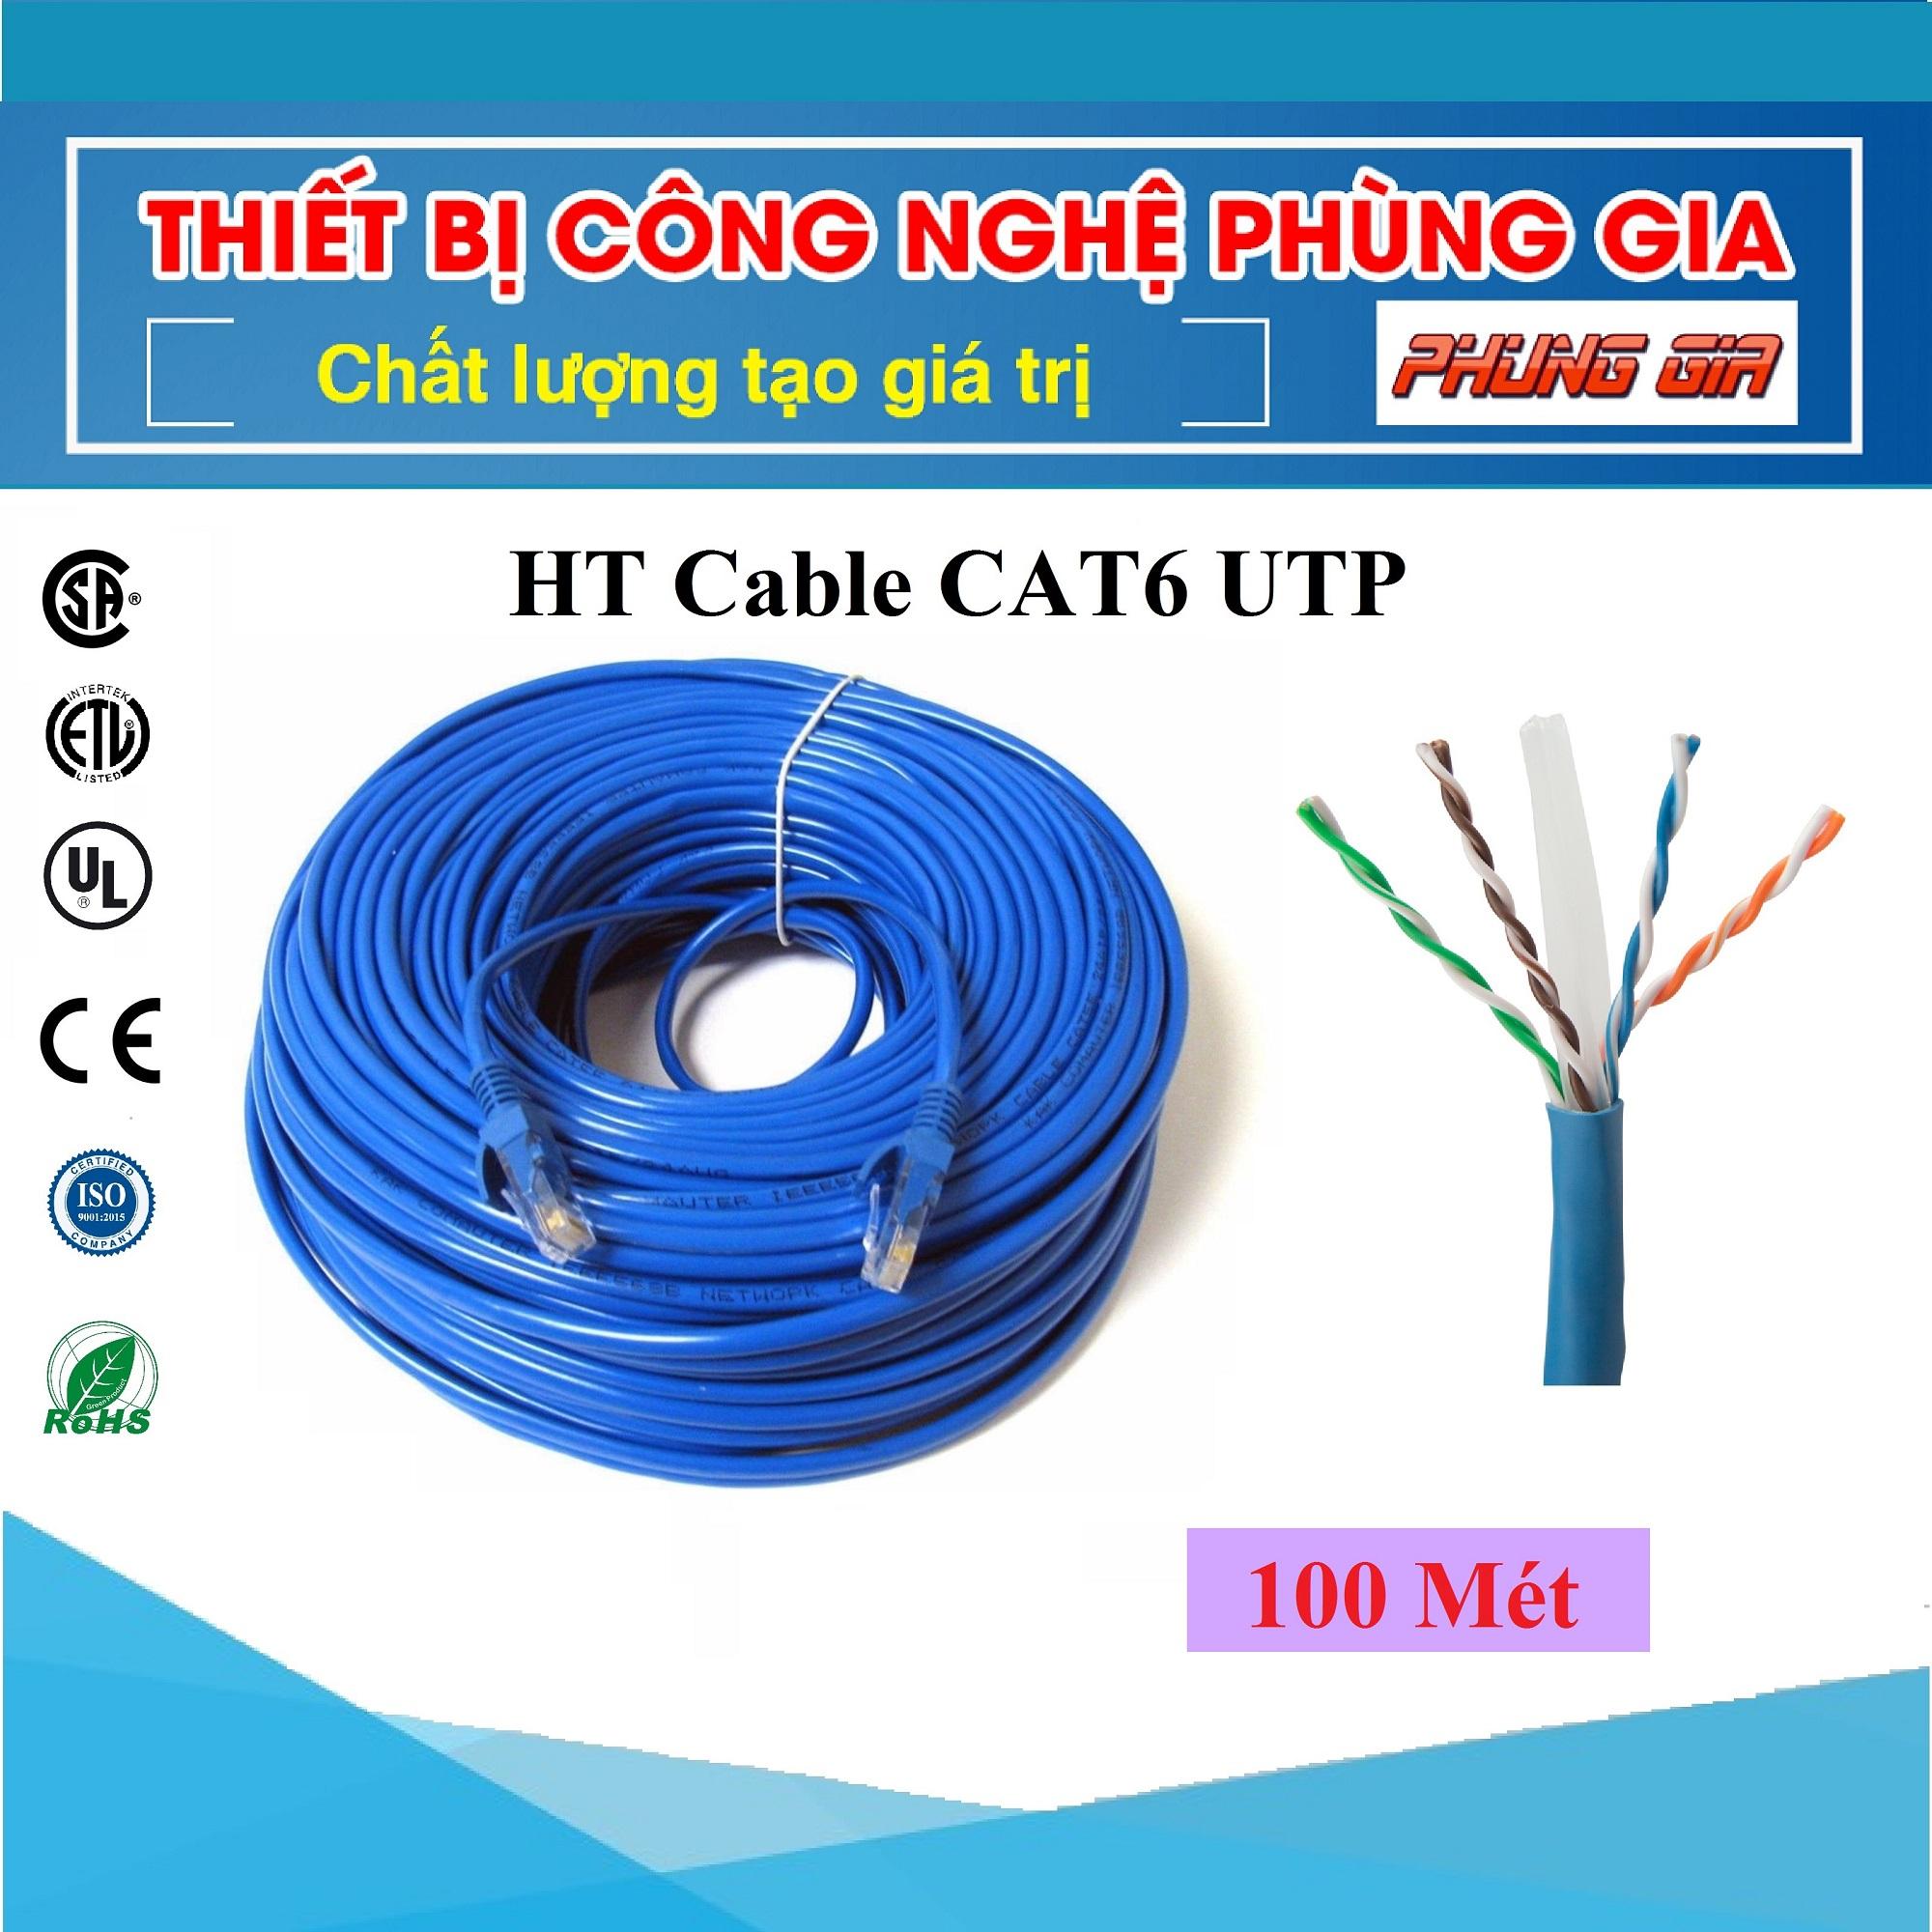 100 Mét Dây cáp mạng Cat6 UTP HT-Cable - Bấm sẵn 2 đầu